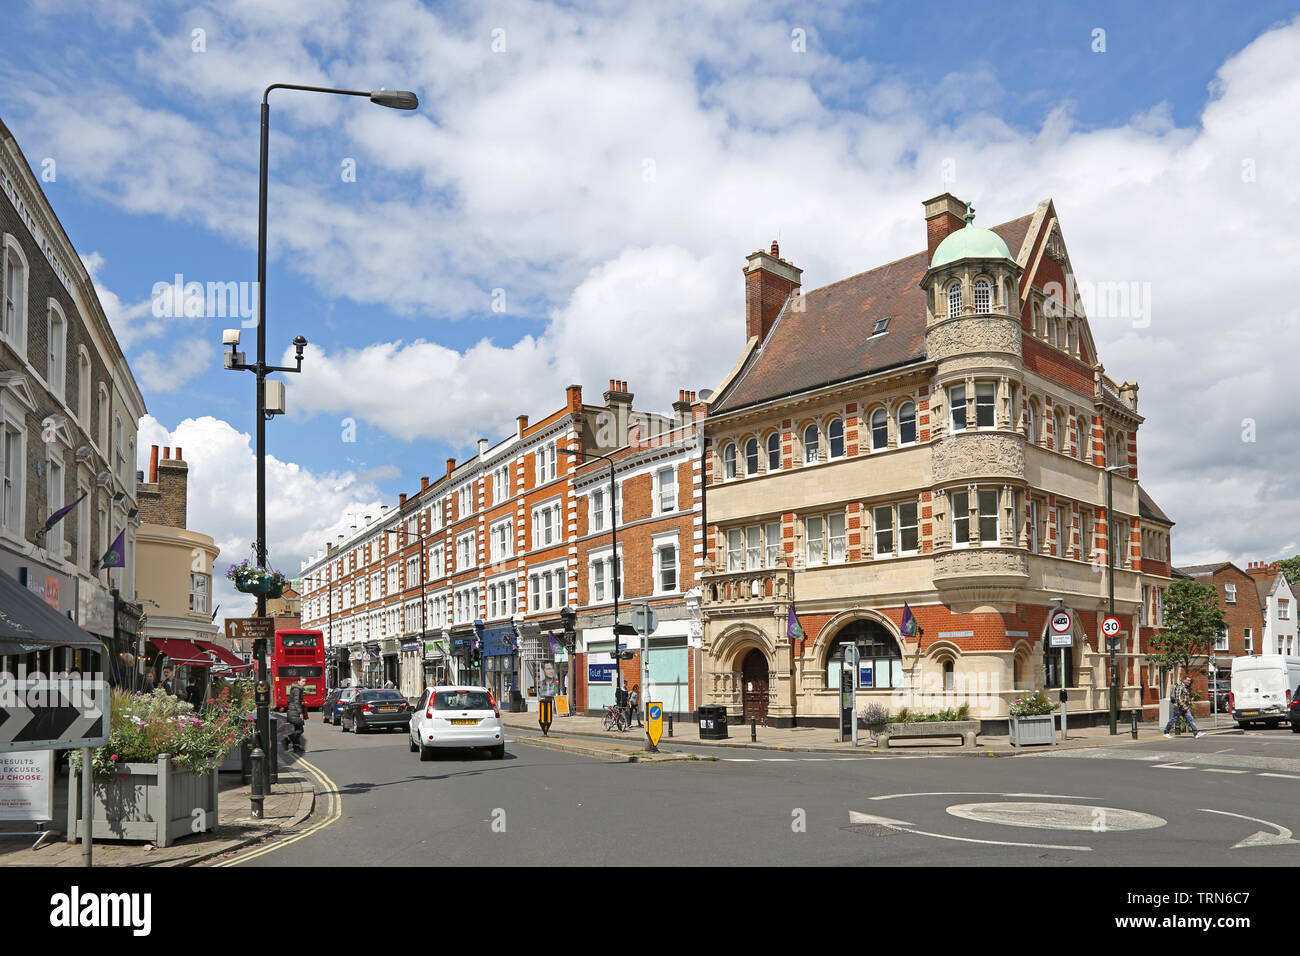 Wimbledon Village, una ricca area del sud-ovest di Londra, Regno Unito. Mostra ornato ex edificio della banca e negozi; incrocio di High Street e Belvedere Road. Foto Stock